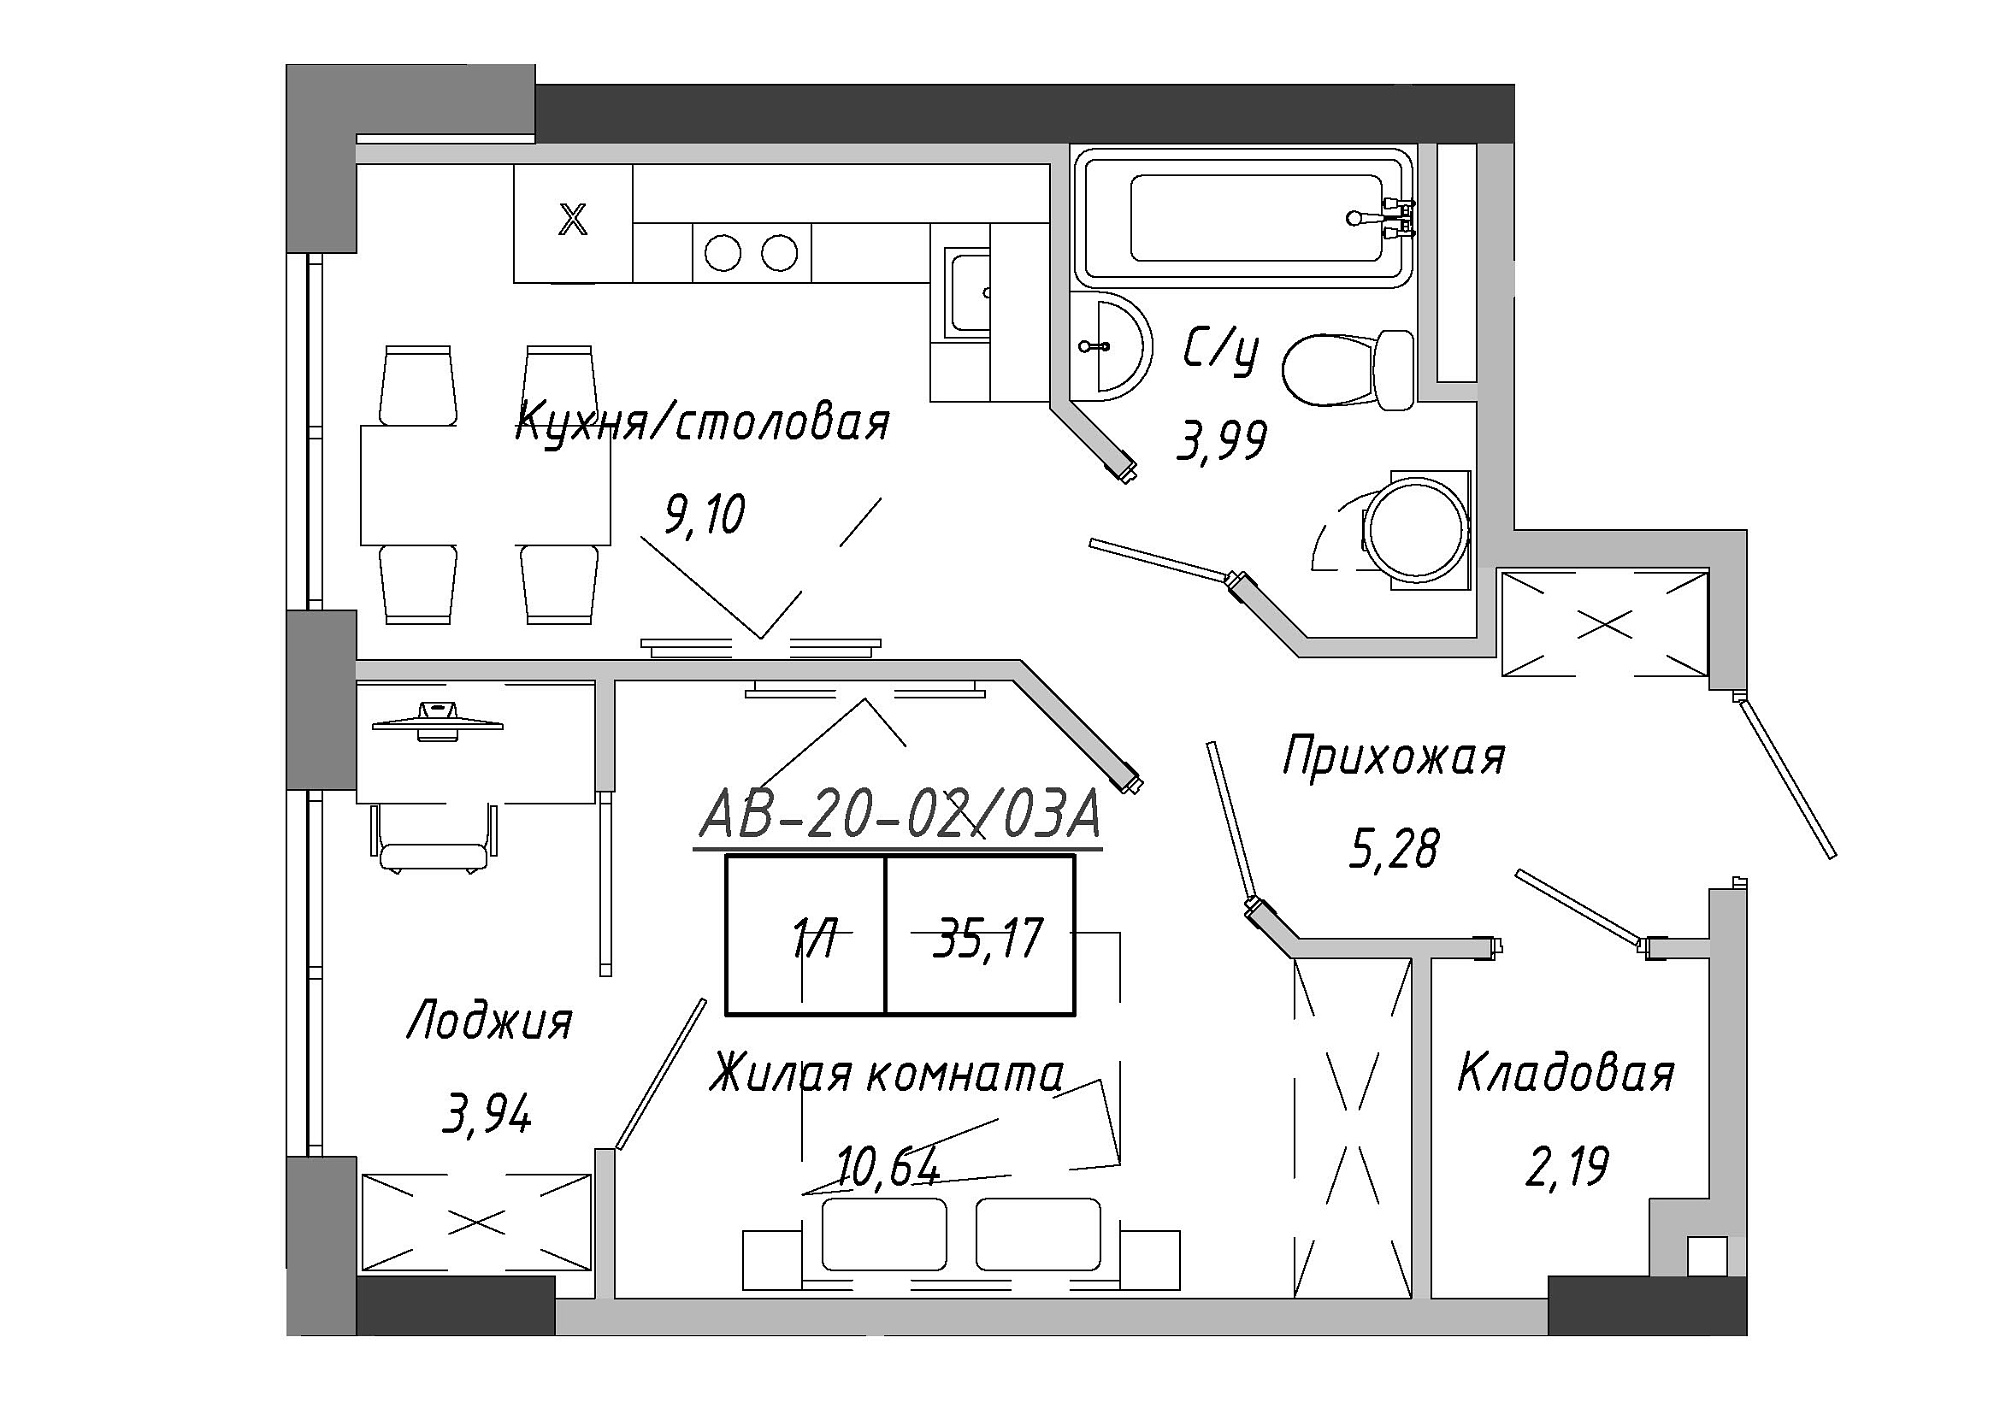 Планування 1-к квартира площею 35.17м2, AB-20-02/0003а.